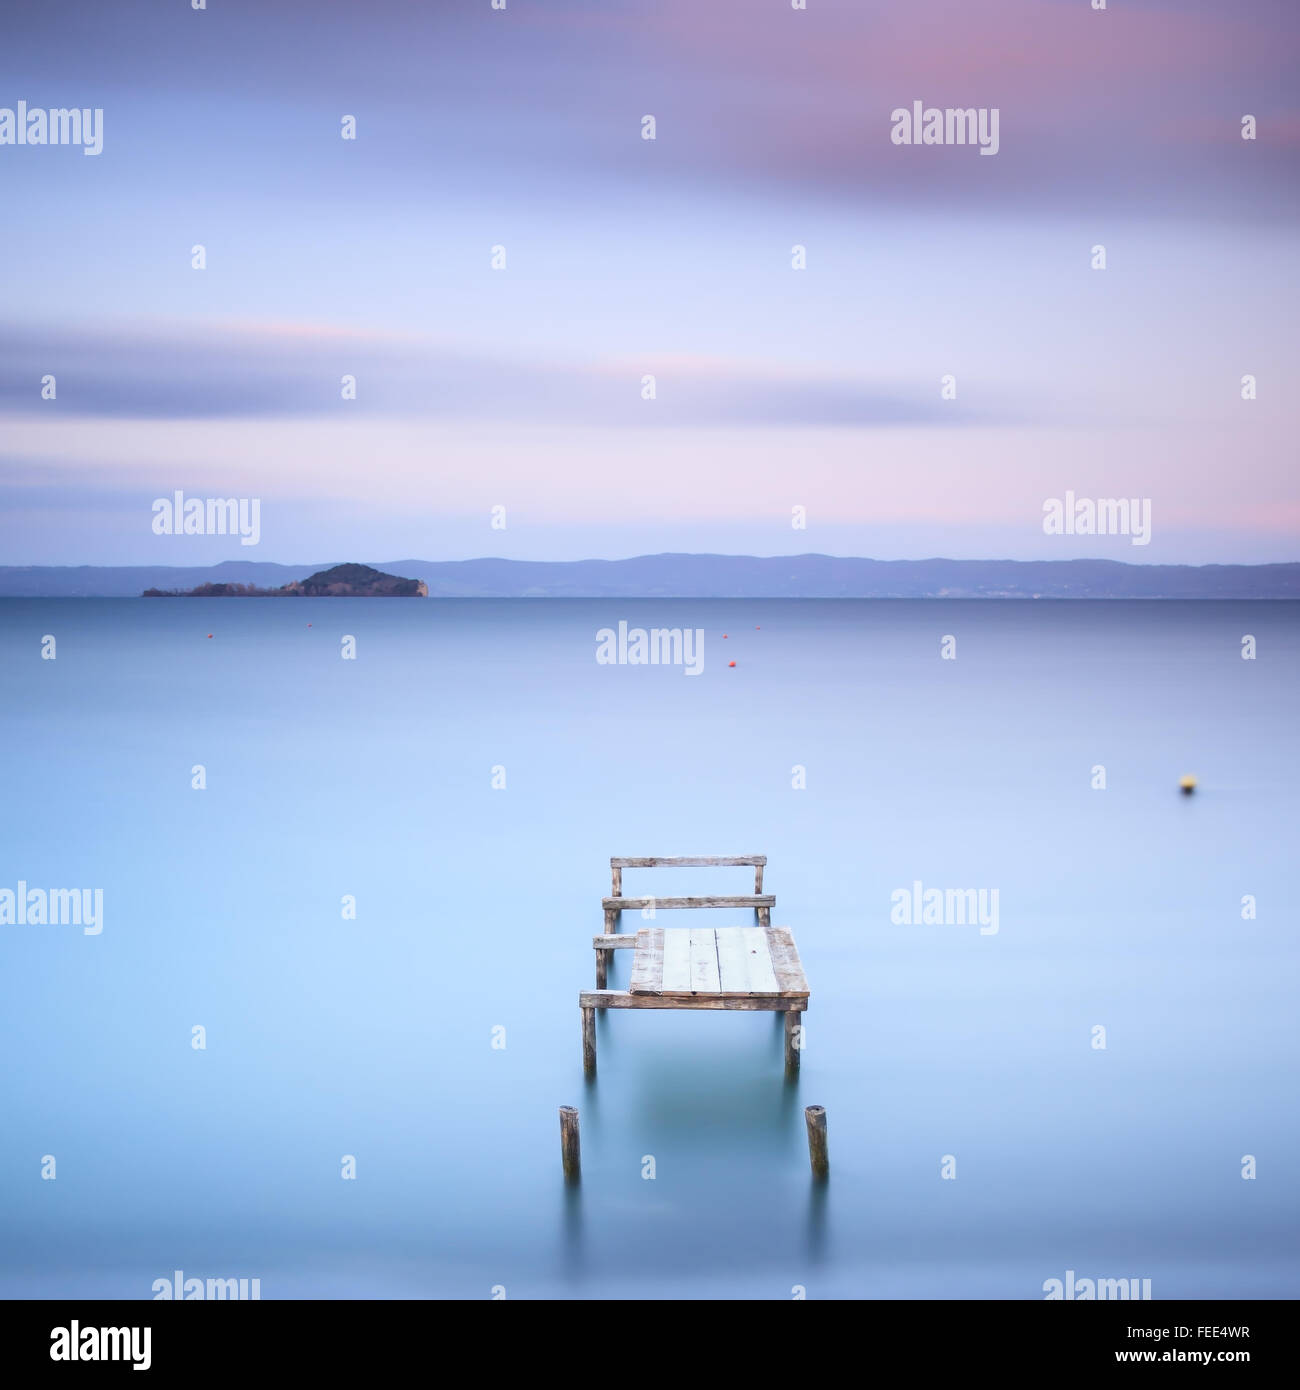 Il molo di legno o molo su un lago blu. Colline sullo sfondo. Fotografie con lunghi tempi di esposizione nel lago di Bolsena, Italia, Europa. Foto Stock